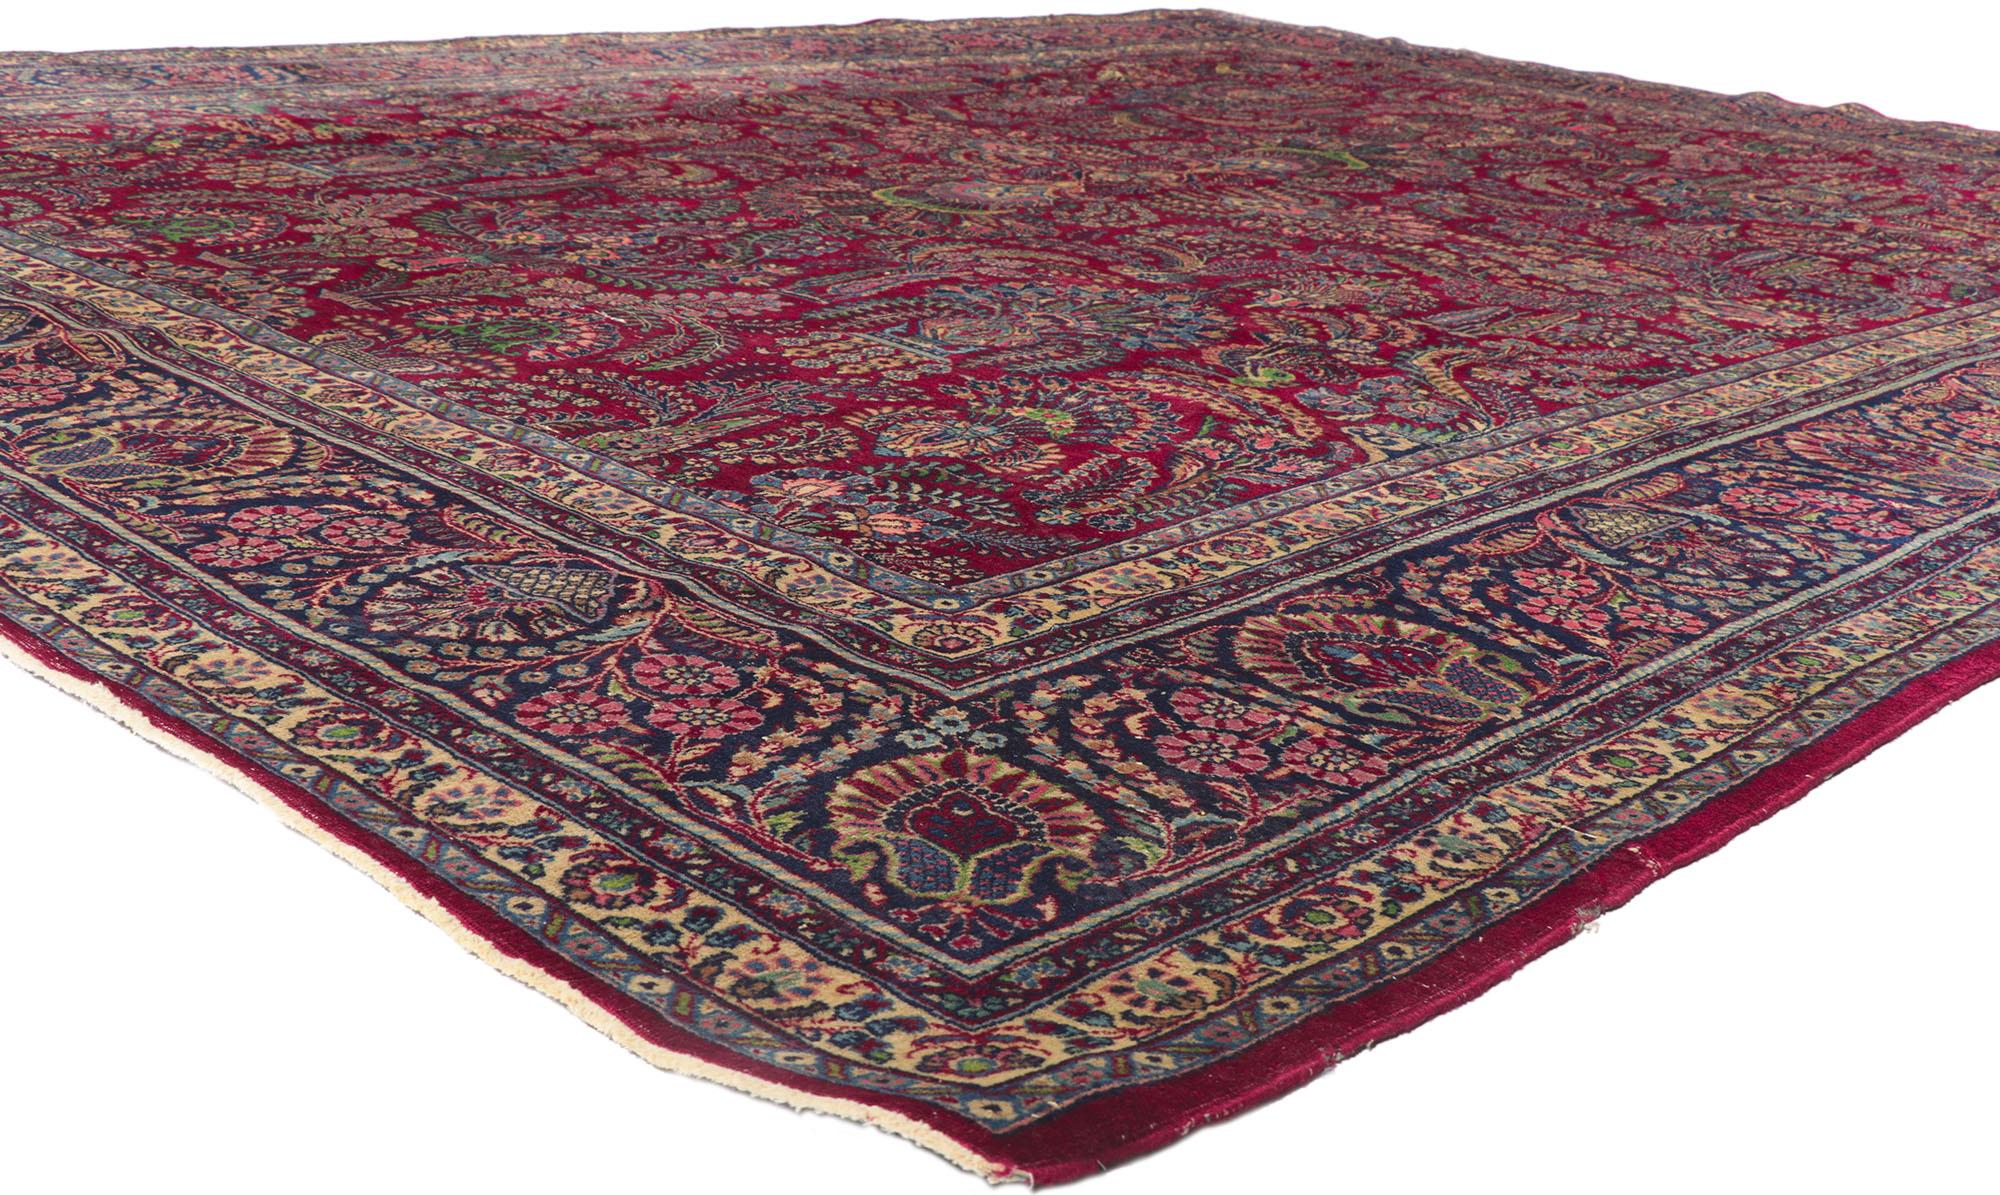 78162 Antiker persischer Kerman-Teppich, 11'02 x 13'09.

Dieser antike persische Kerman-Teppich aus handgeknüpfter Wolle ist eine Reise durch die Zeit und verkörpert die Verbindung von herrschaftlicher Dekadenz und raffinierter Raffinesse. Kerman,